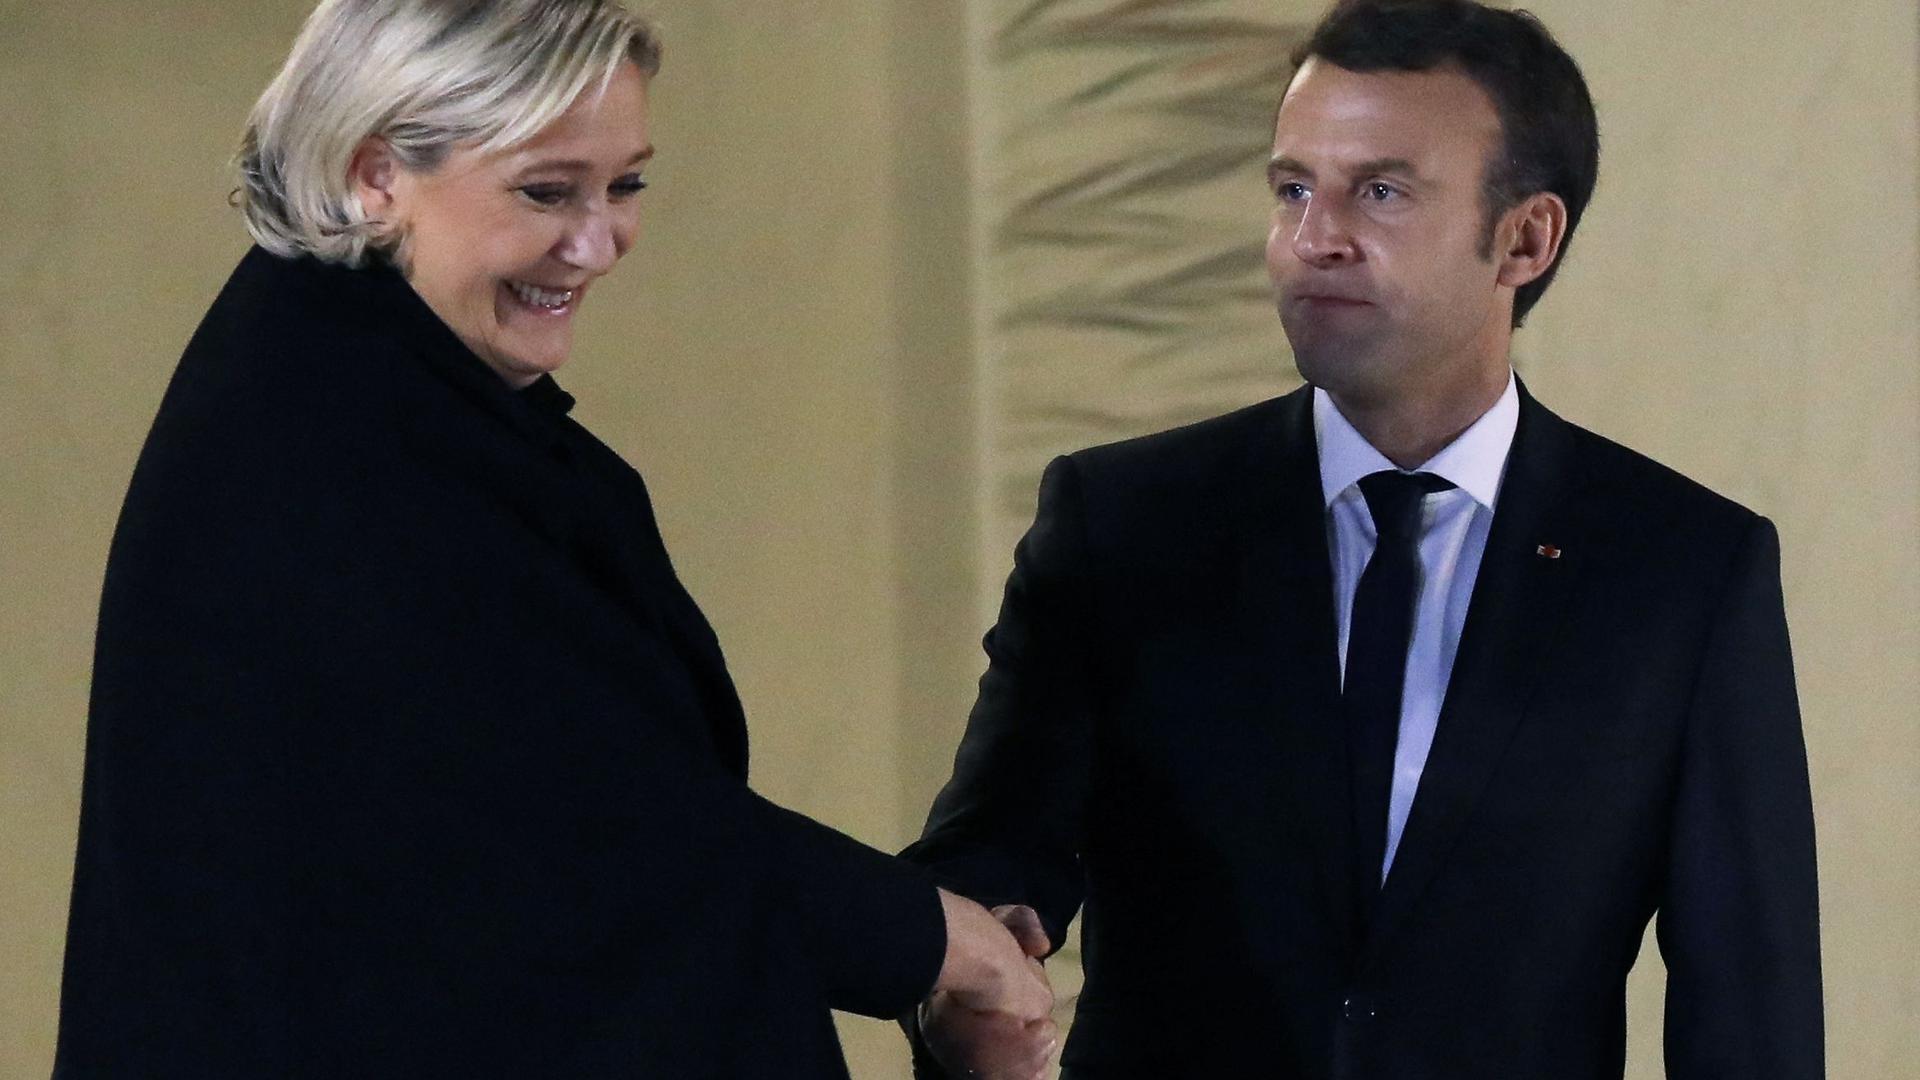 Le duel s'annonce serré entre Marine Le Pen et Emmanuel Macron.